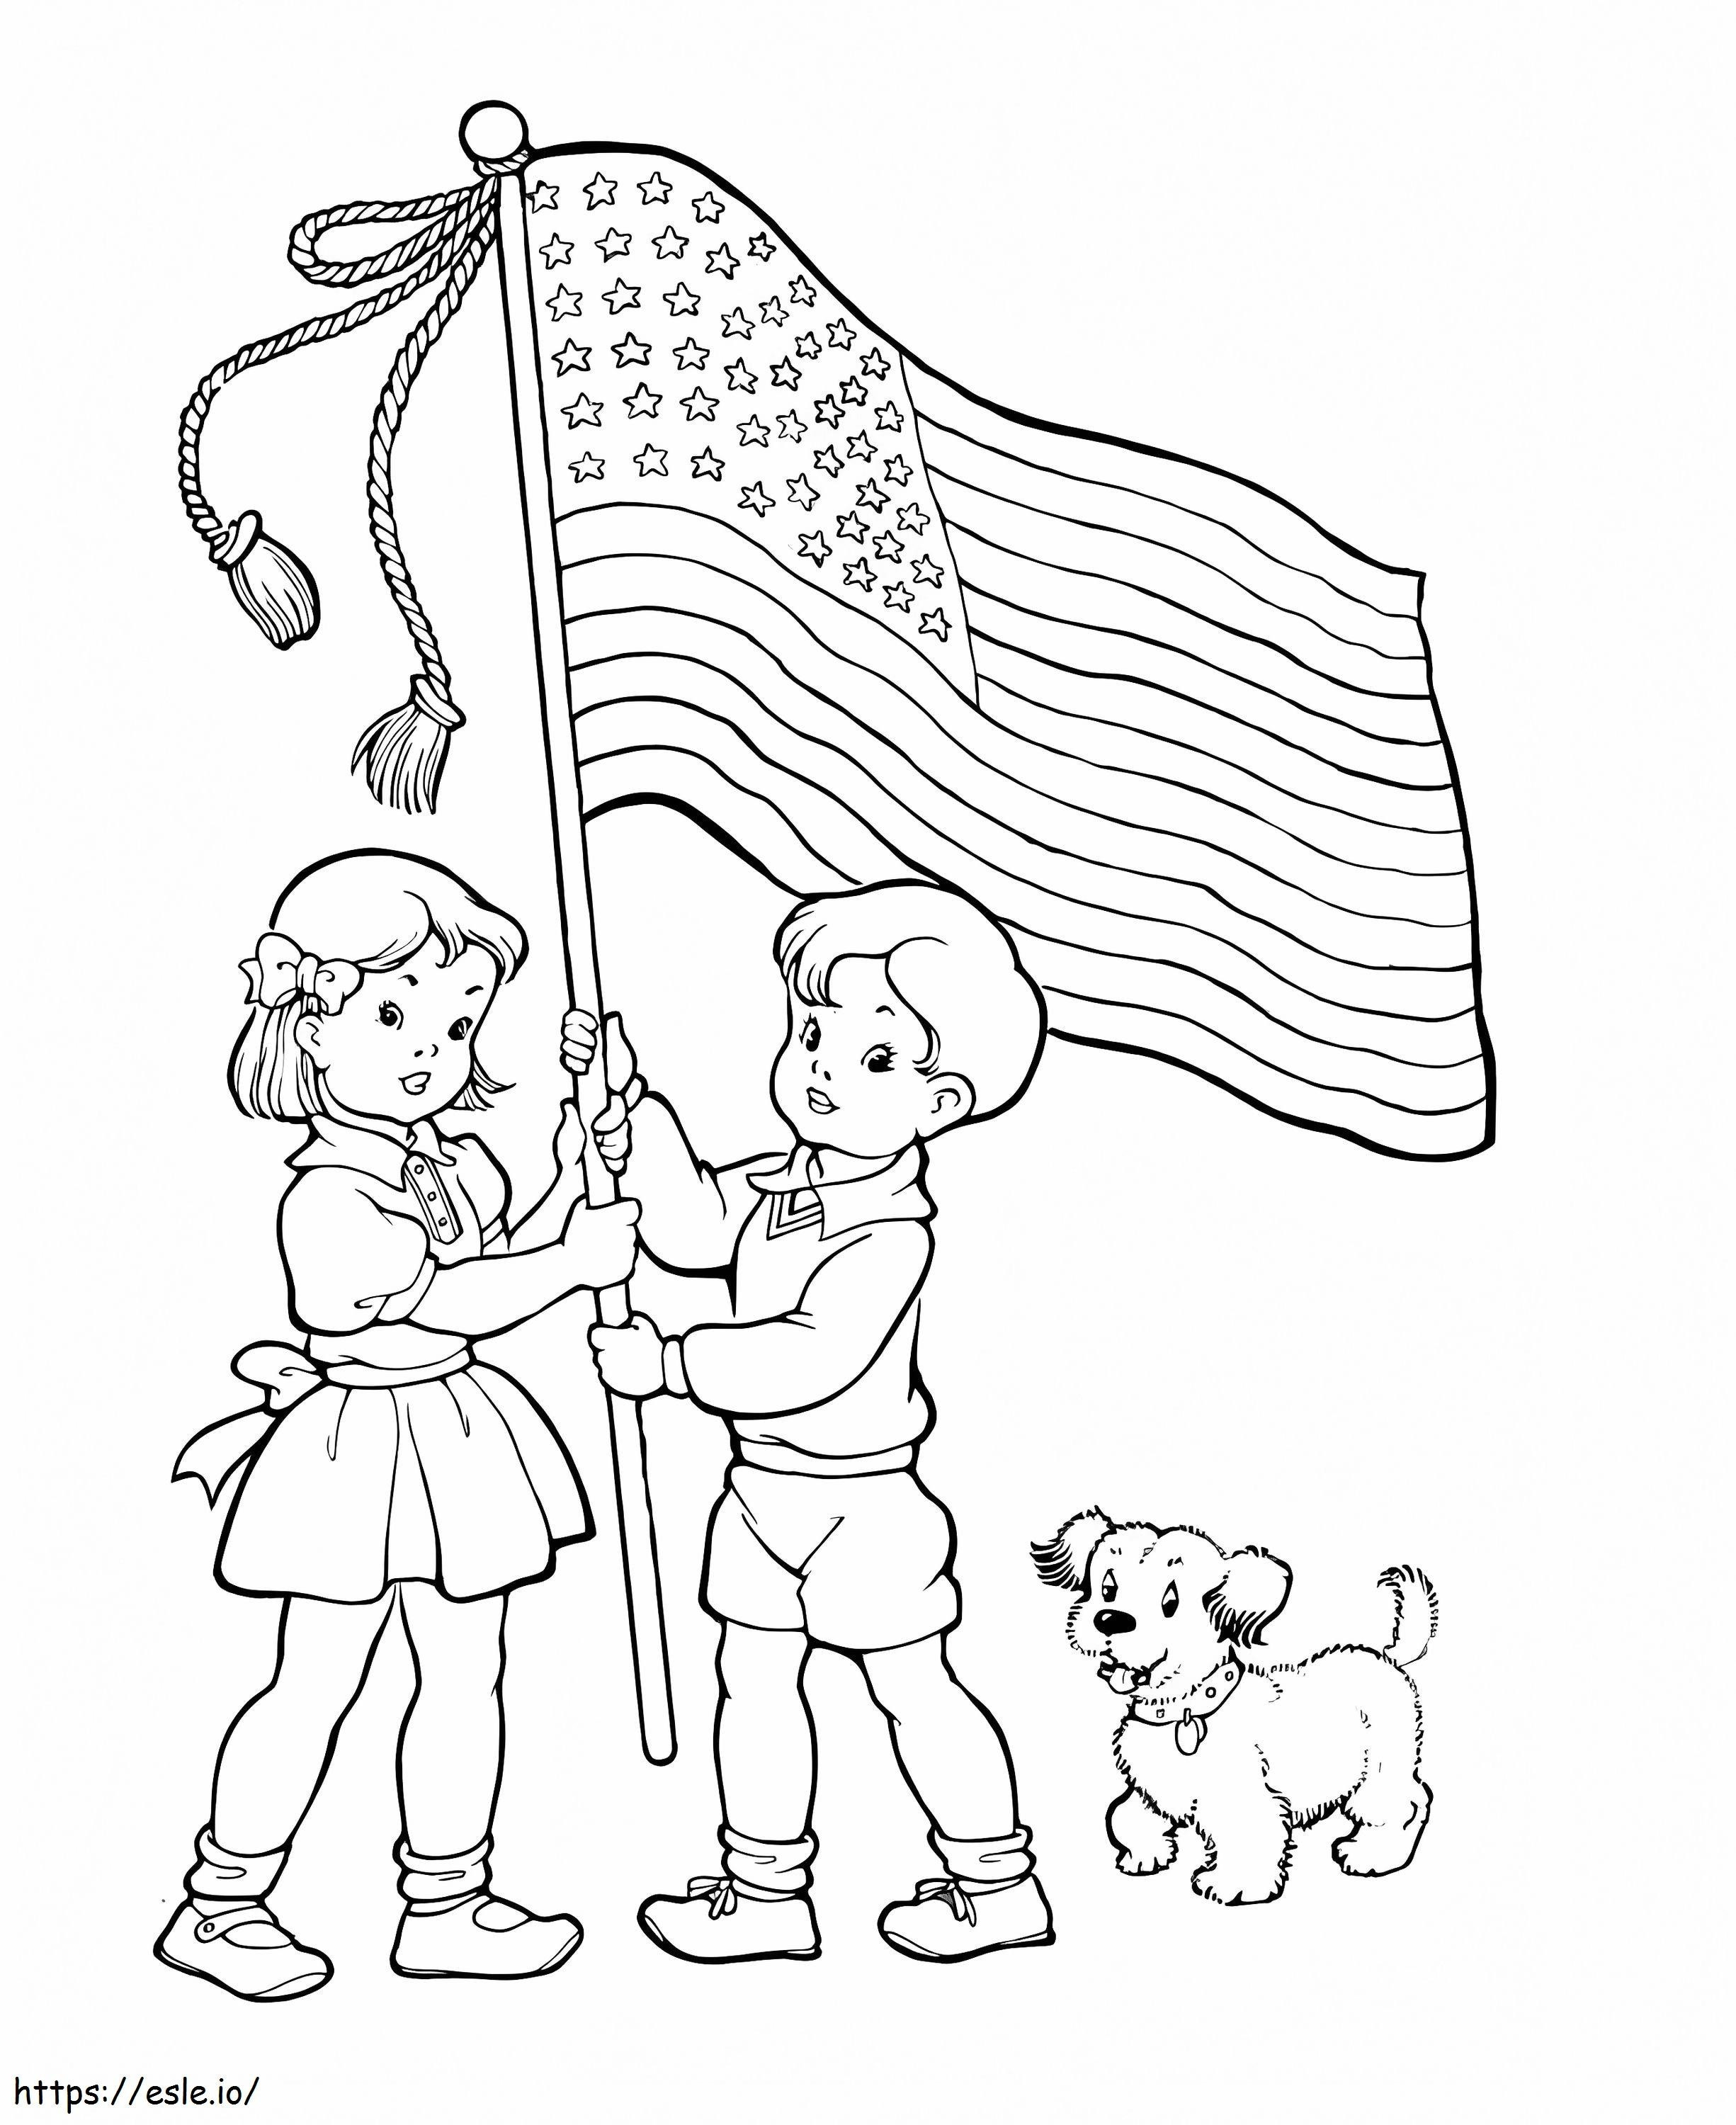 Día de los niños con la bandera para colorear